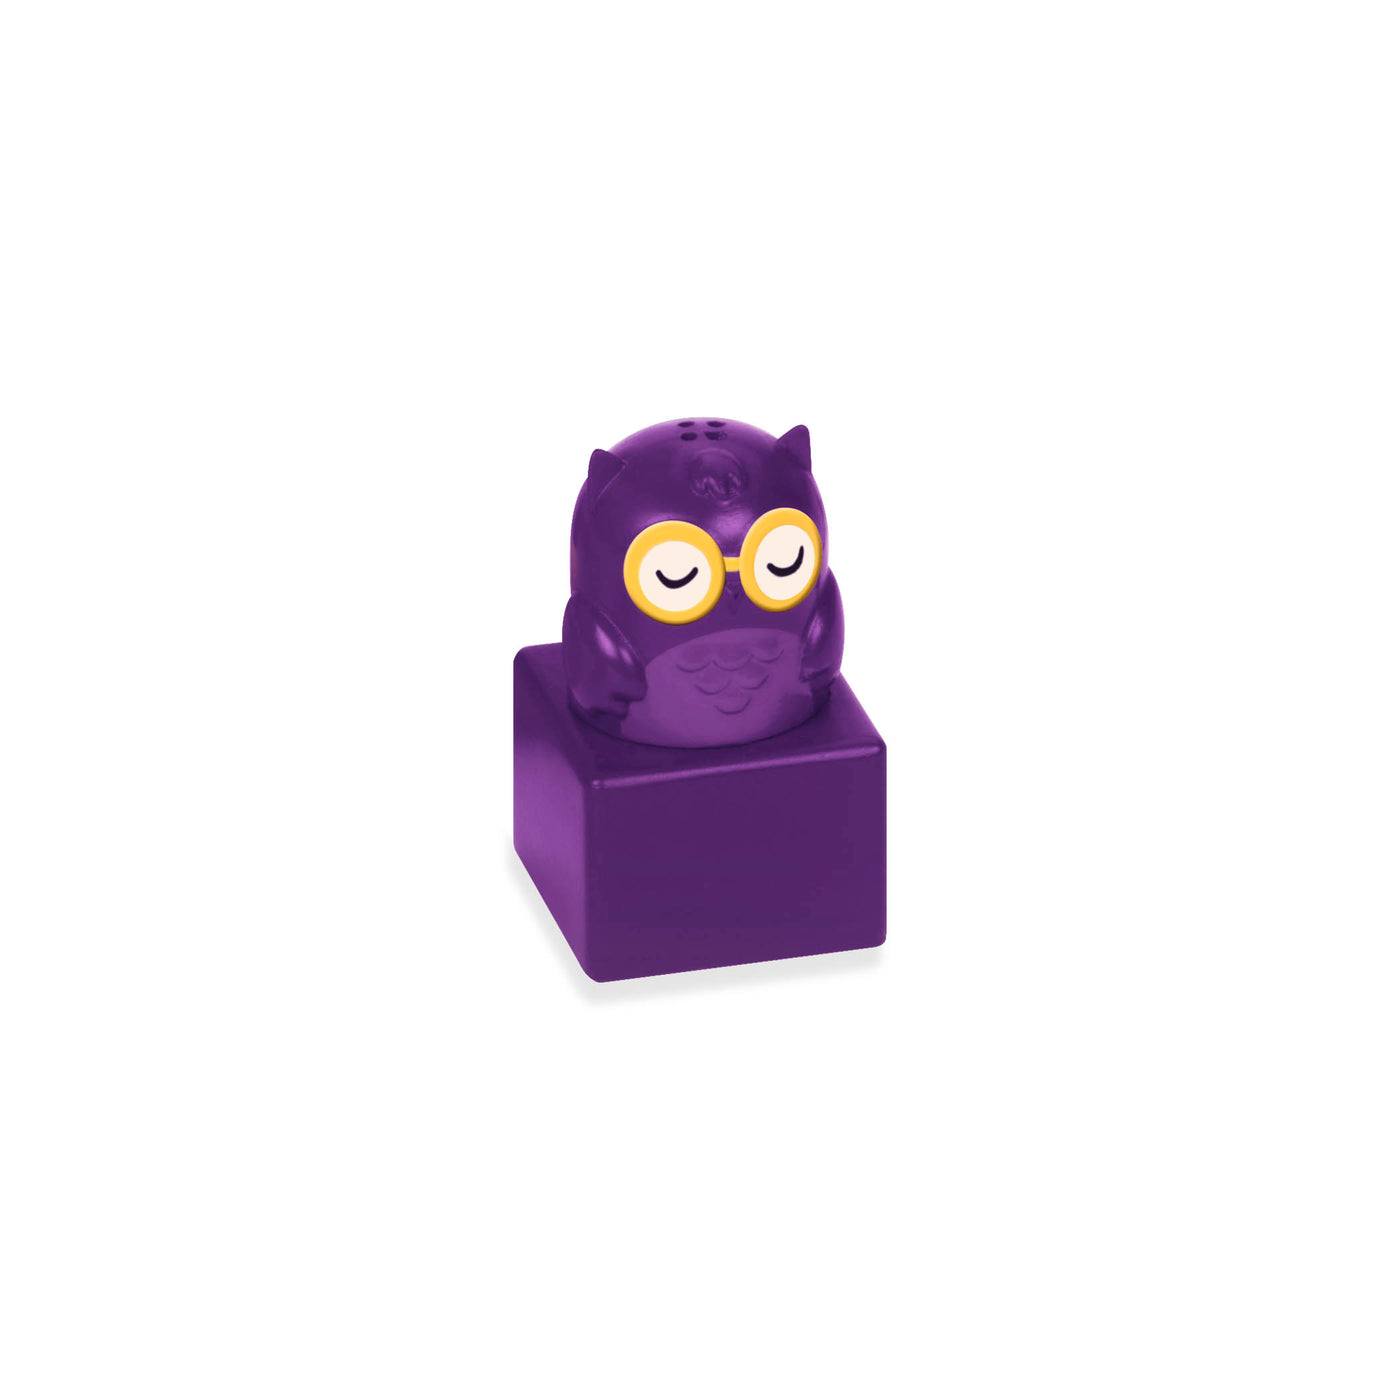 Owl-themed shape sorter